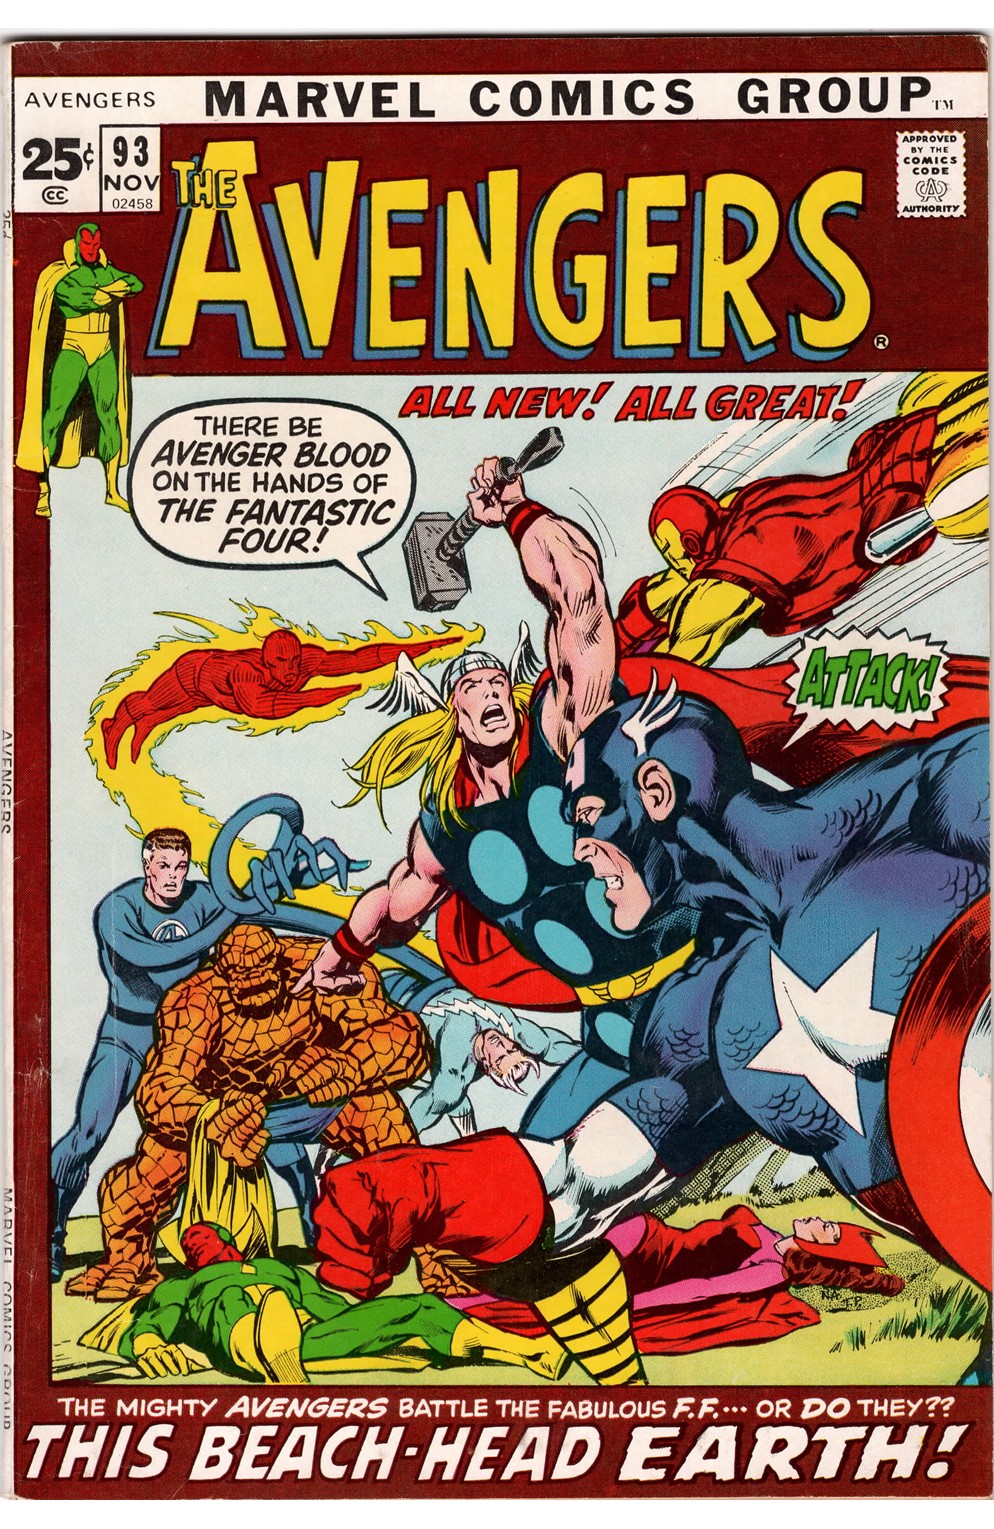 Avengers #093